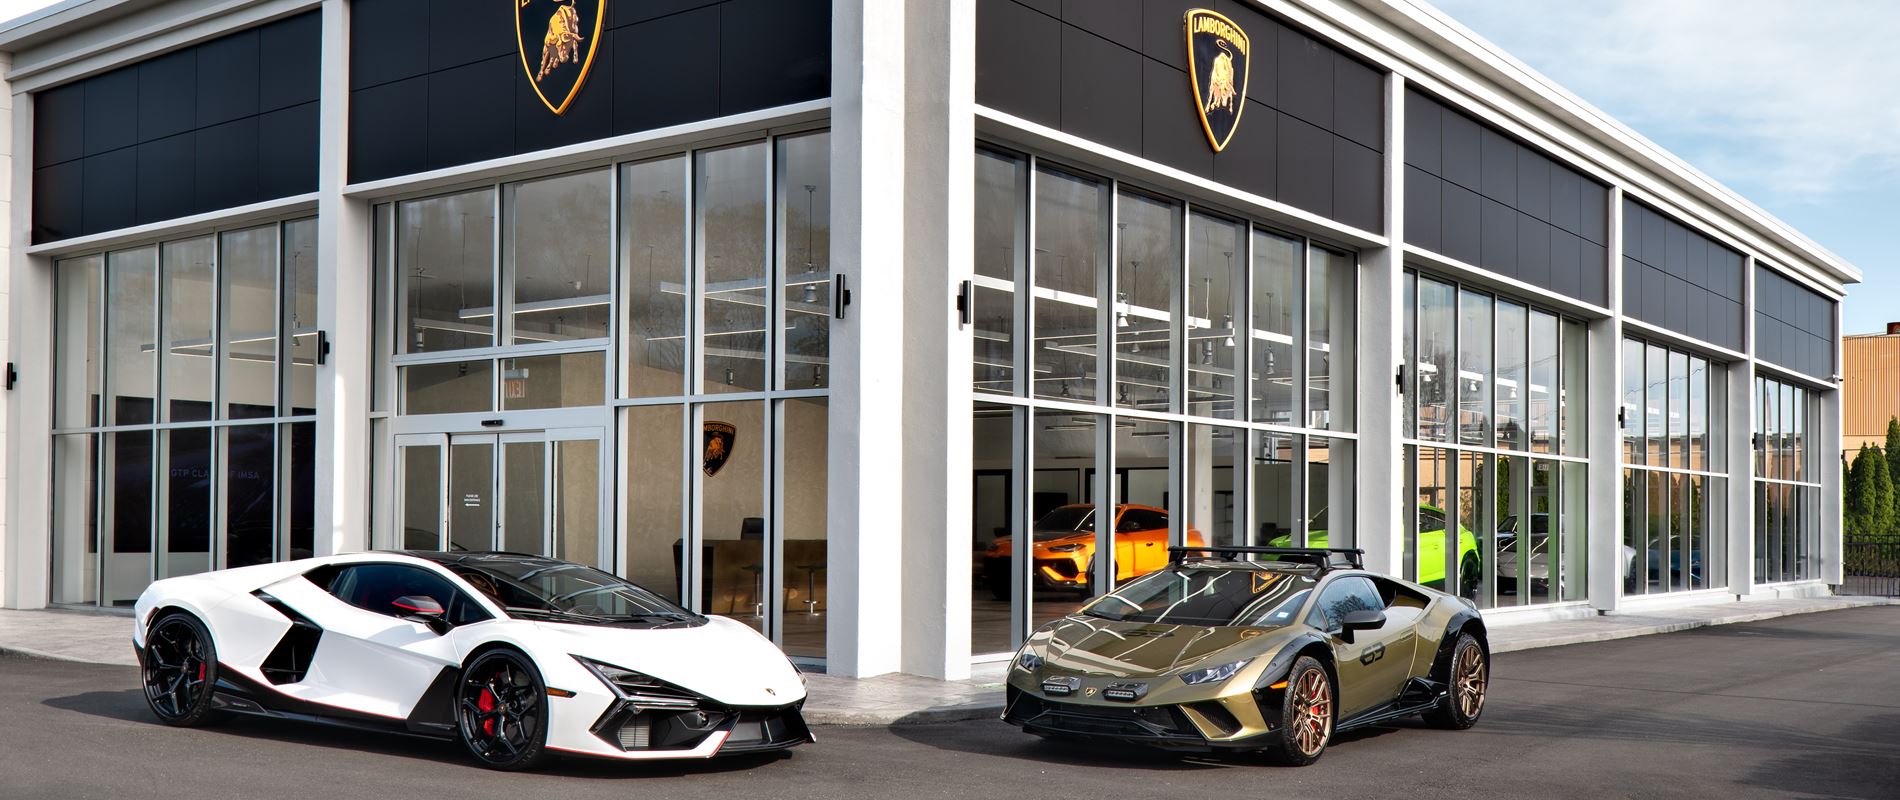 Automobili Lamborghini presenta la nuova veste dello showroom di Long Island esponendo il primo Super SUV ibrido plug in